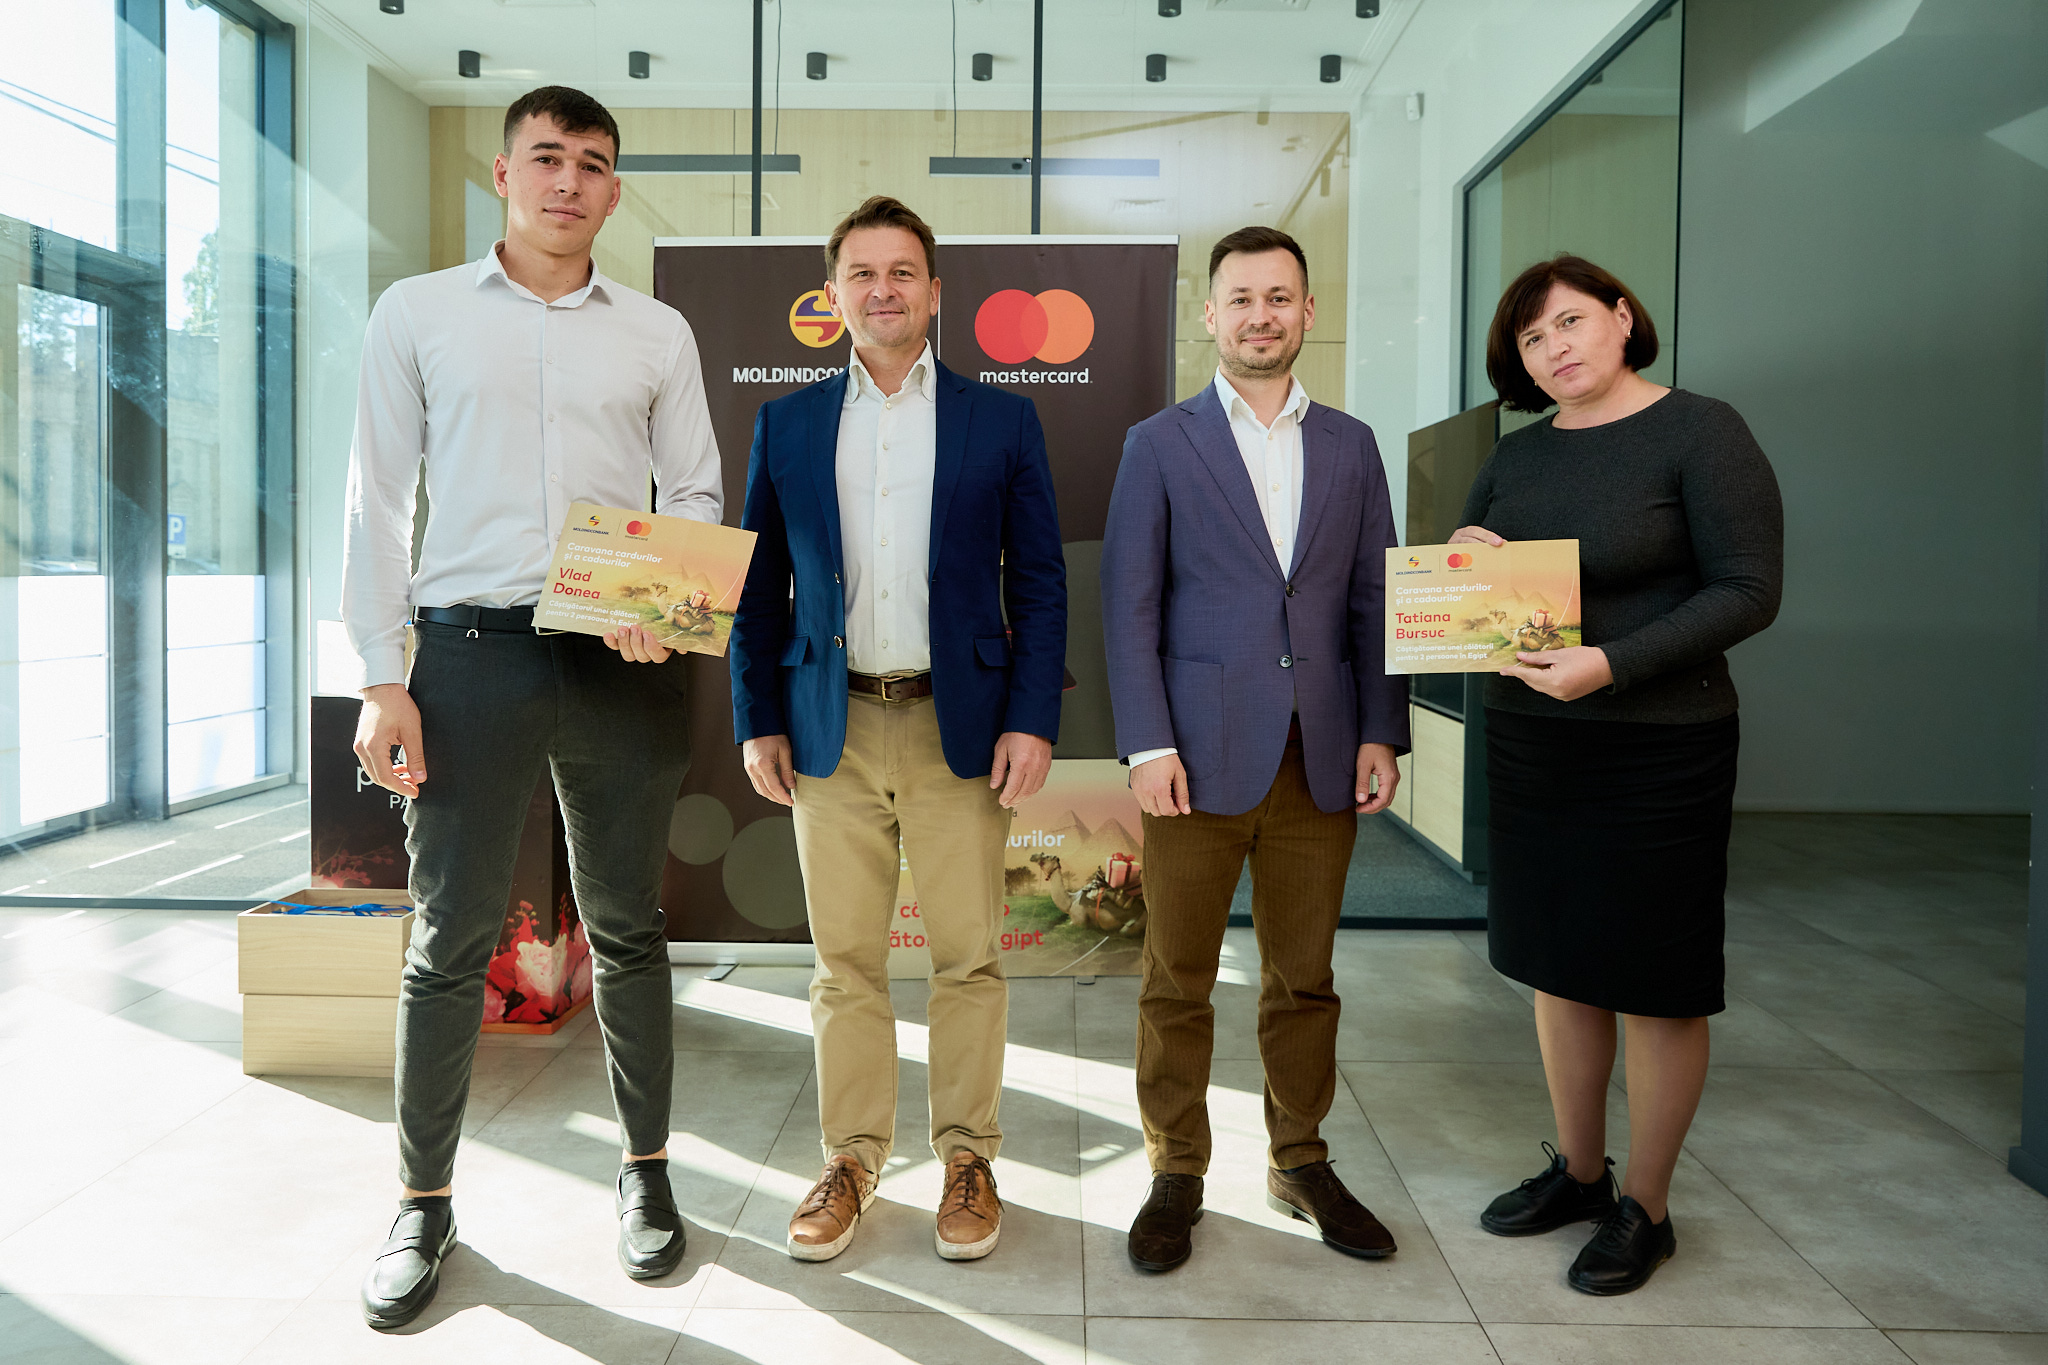 Felicitări celor 23 mari câștigători ai promoției ”Caravana cardurilor și a cadourilor”, organizată de Moldindconbank și Mastercard